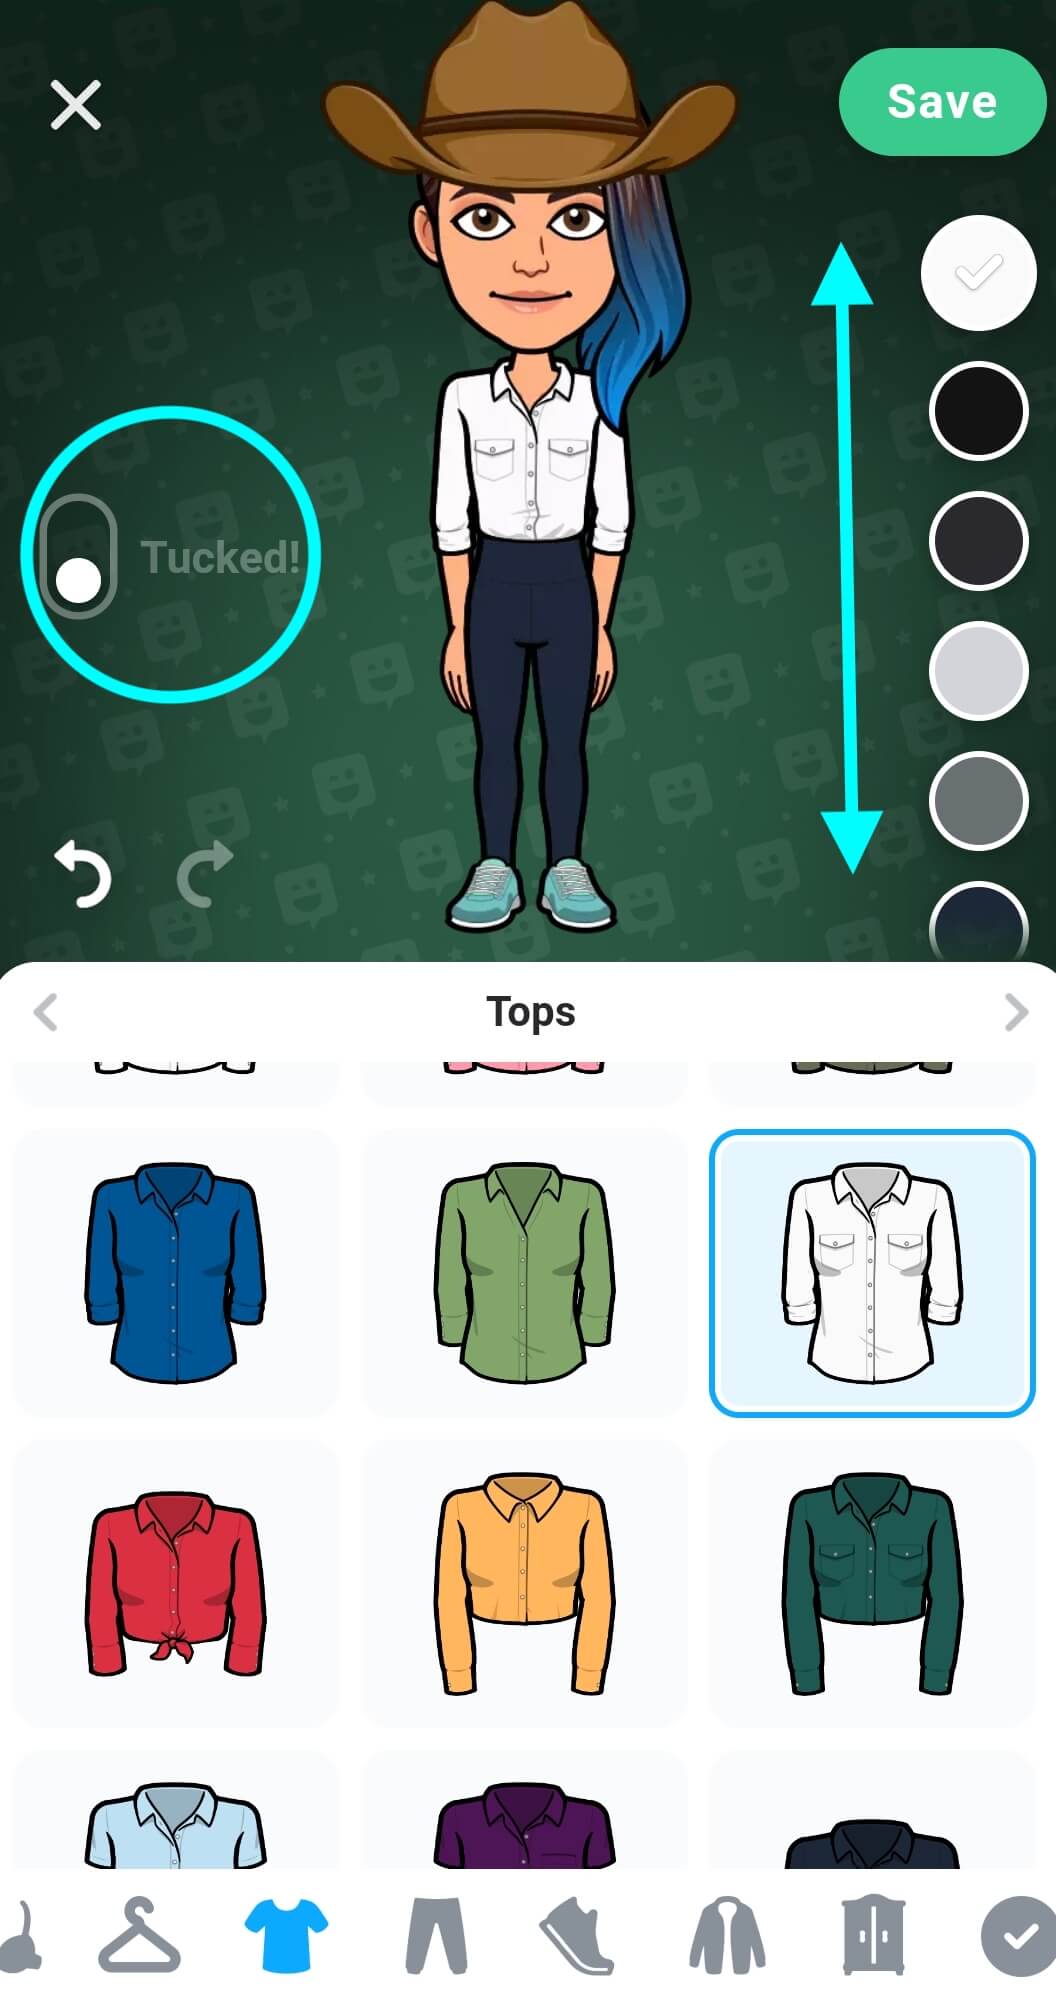 El botón para meter las prendas superiores por dentro del pantalón/falda se encuentra a la izquierda y está destacado. La paleta de colores está a la derecha, con flechas que indican que se puede deslizar hacia arriba o abajo para ver más opciones de color.